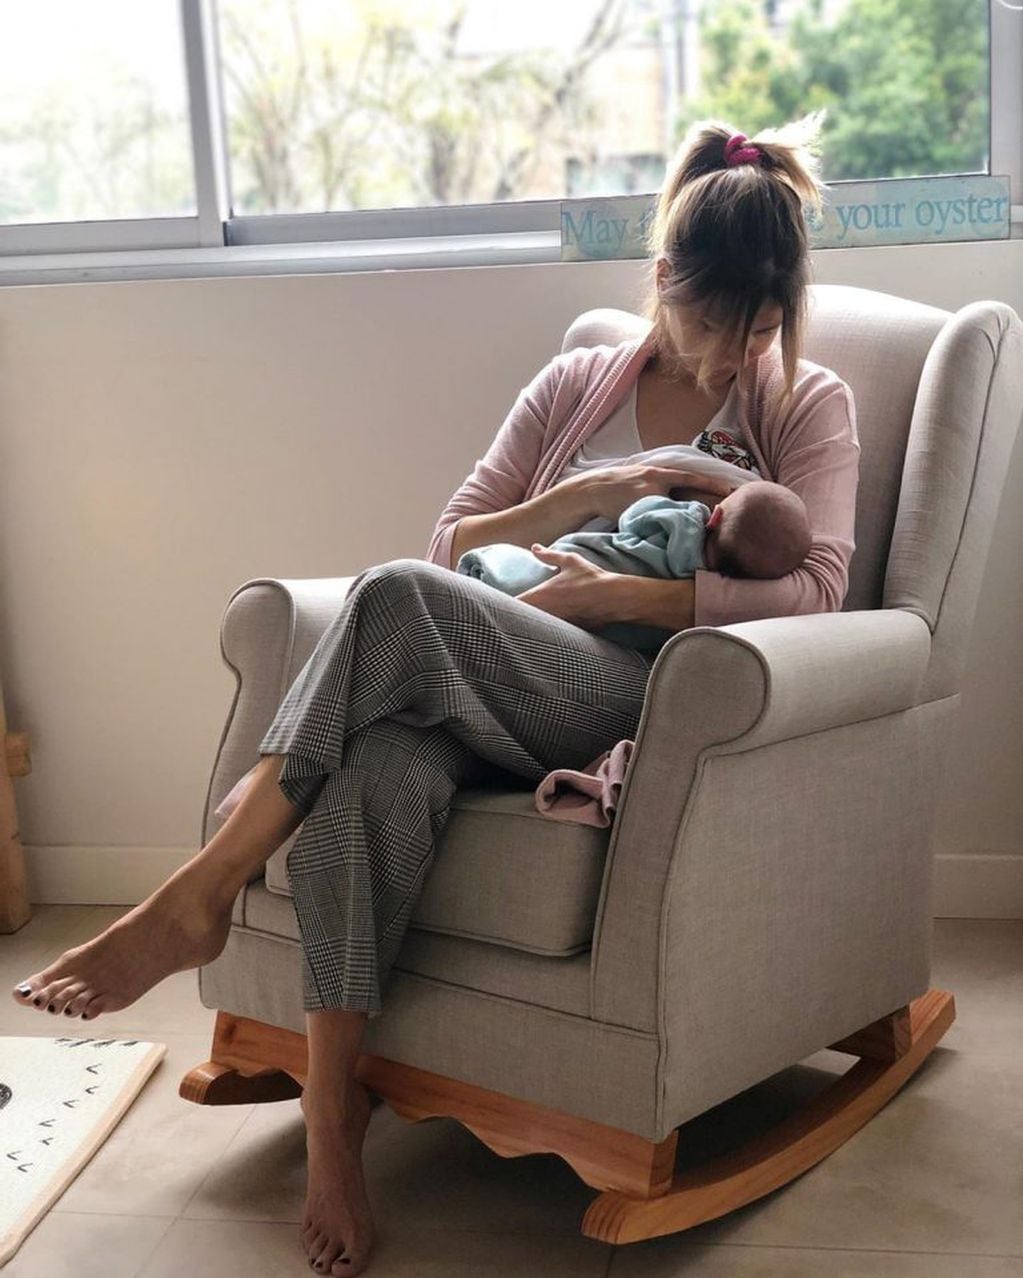 Marcela Kloosterboer compartió una tierna escena con su bebé (Instagram/ m.klooster)